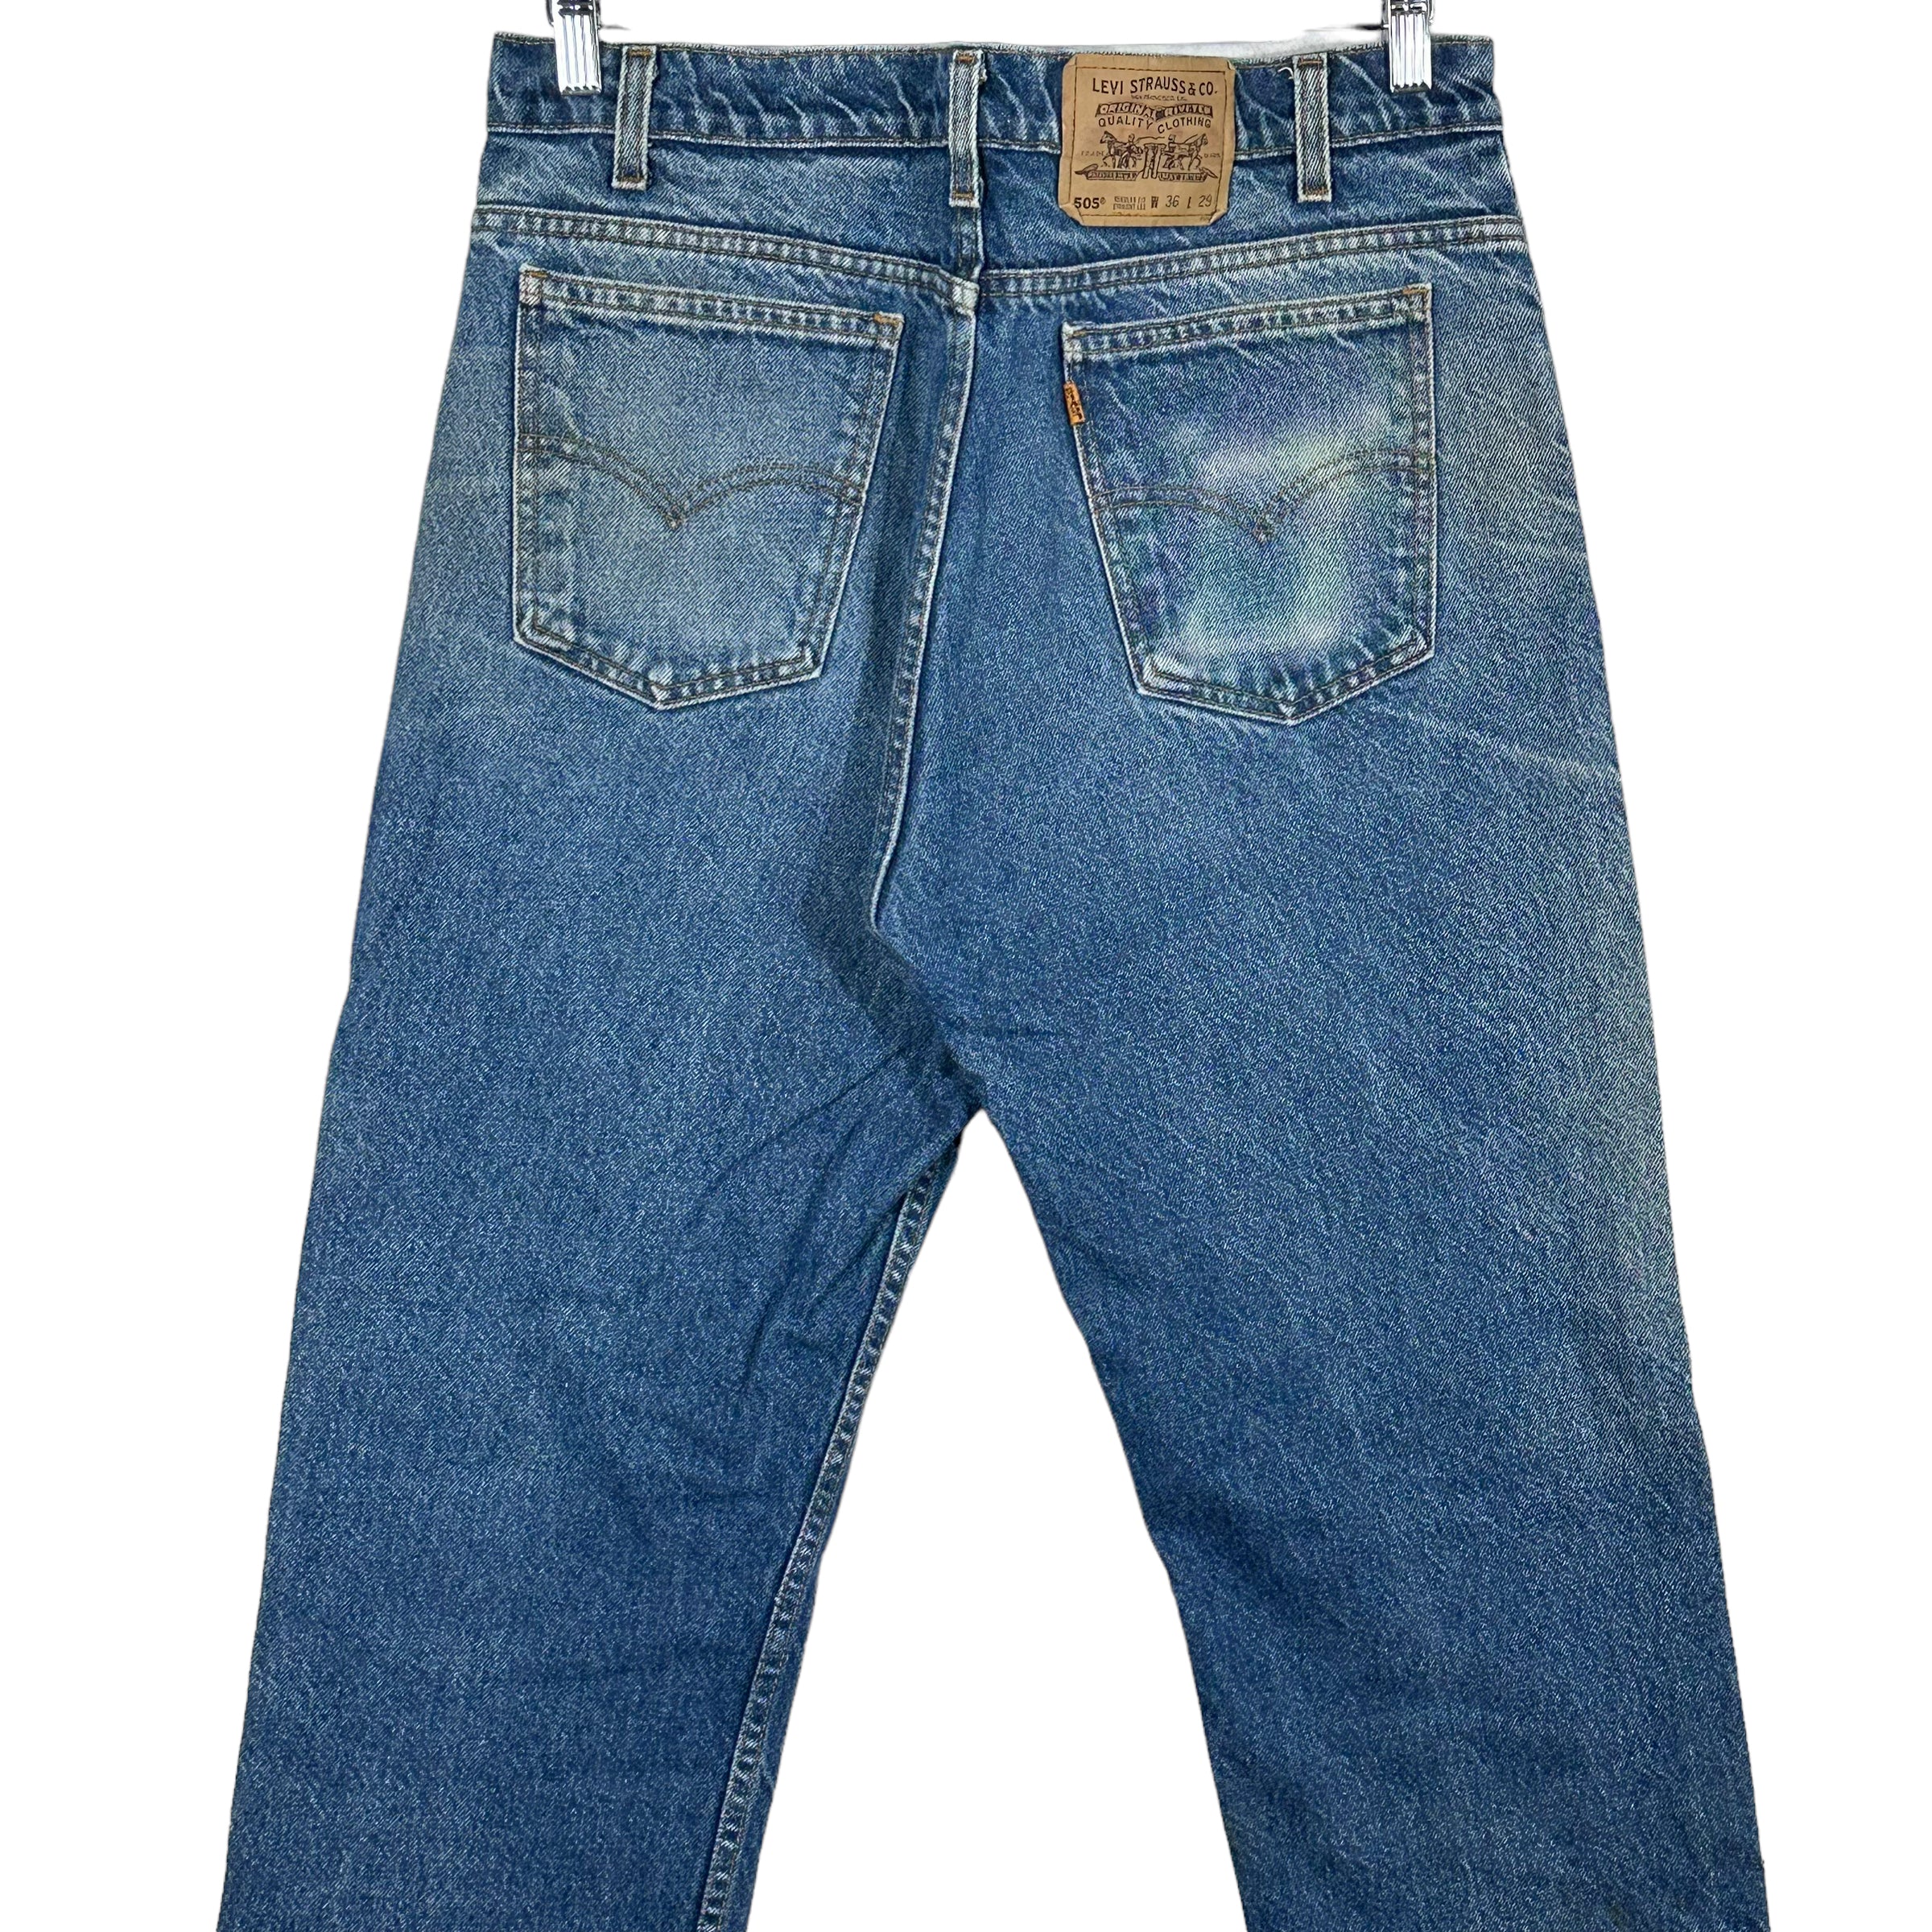 Vintage Levi's 505 Denim Jeans 90s